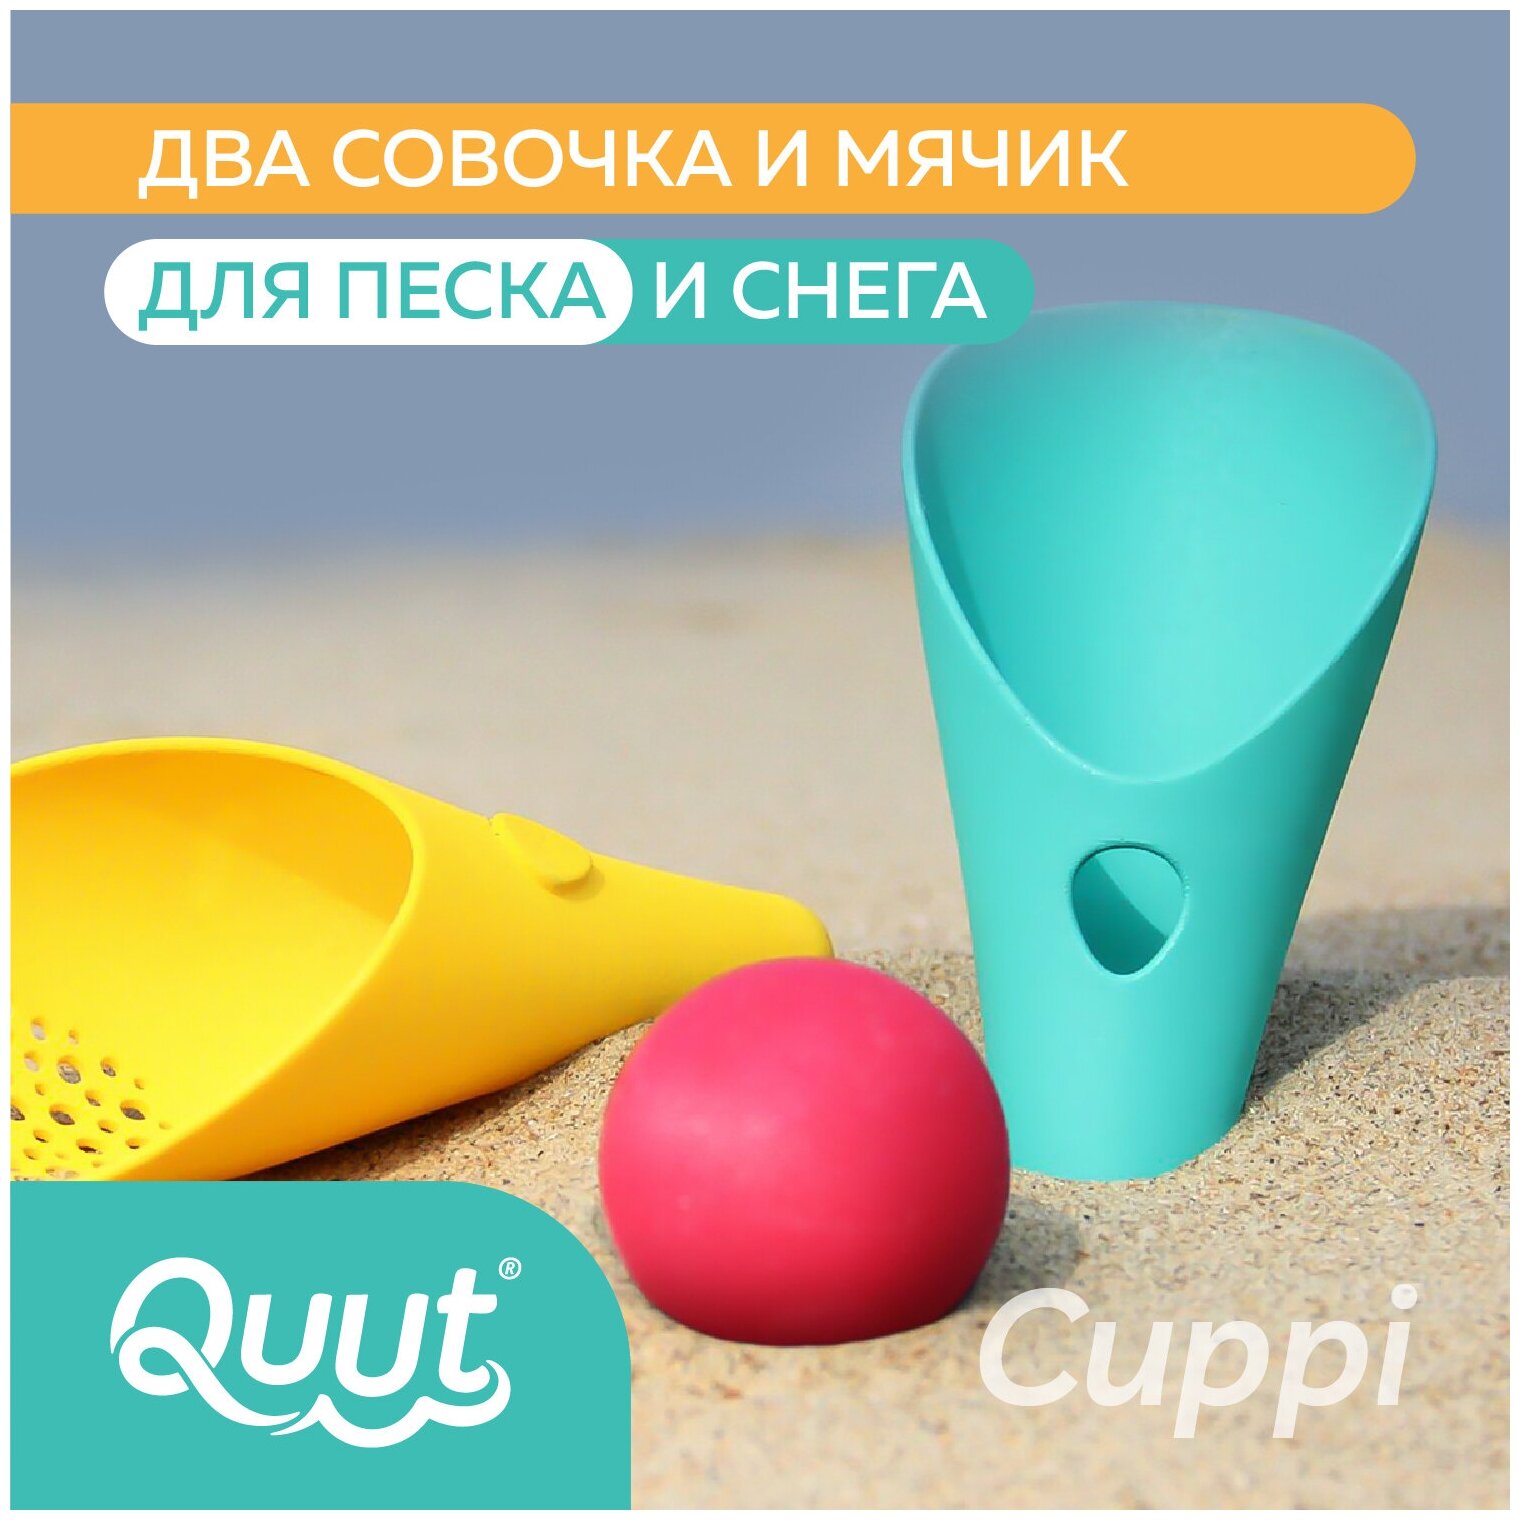 Детский игровой набор для песочницы Quut Cuppi с 2 лопатками. Цвет: банановый и синий